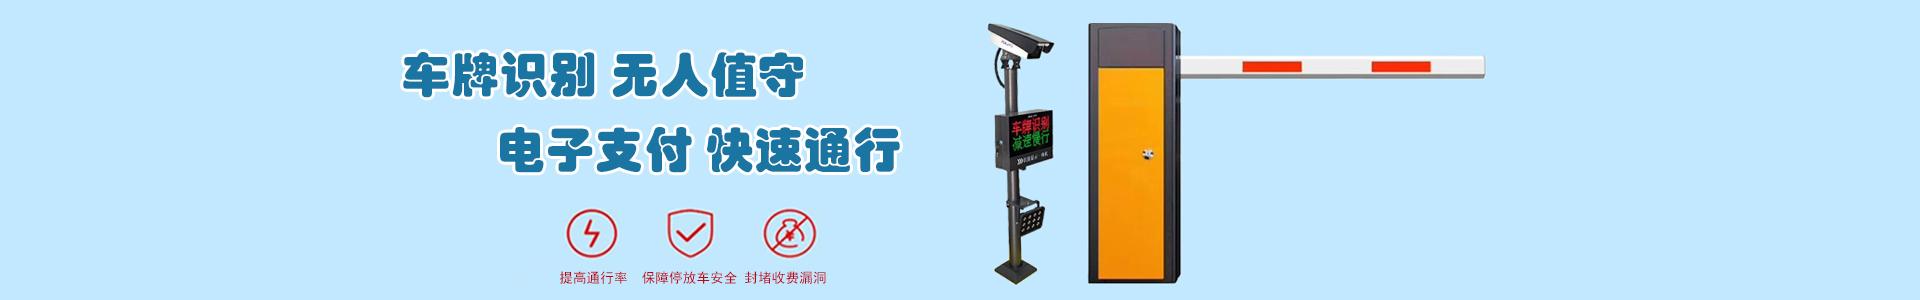 监控系统-上海帆蓝智能科技有限公司-车辆车牌识别|监控摄像头|道闸|小区门禁|人脸识别|伸缩门|